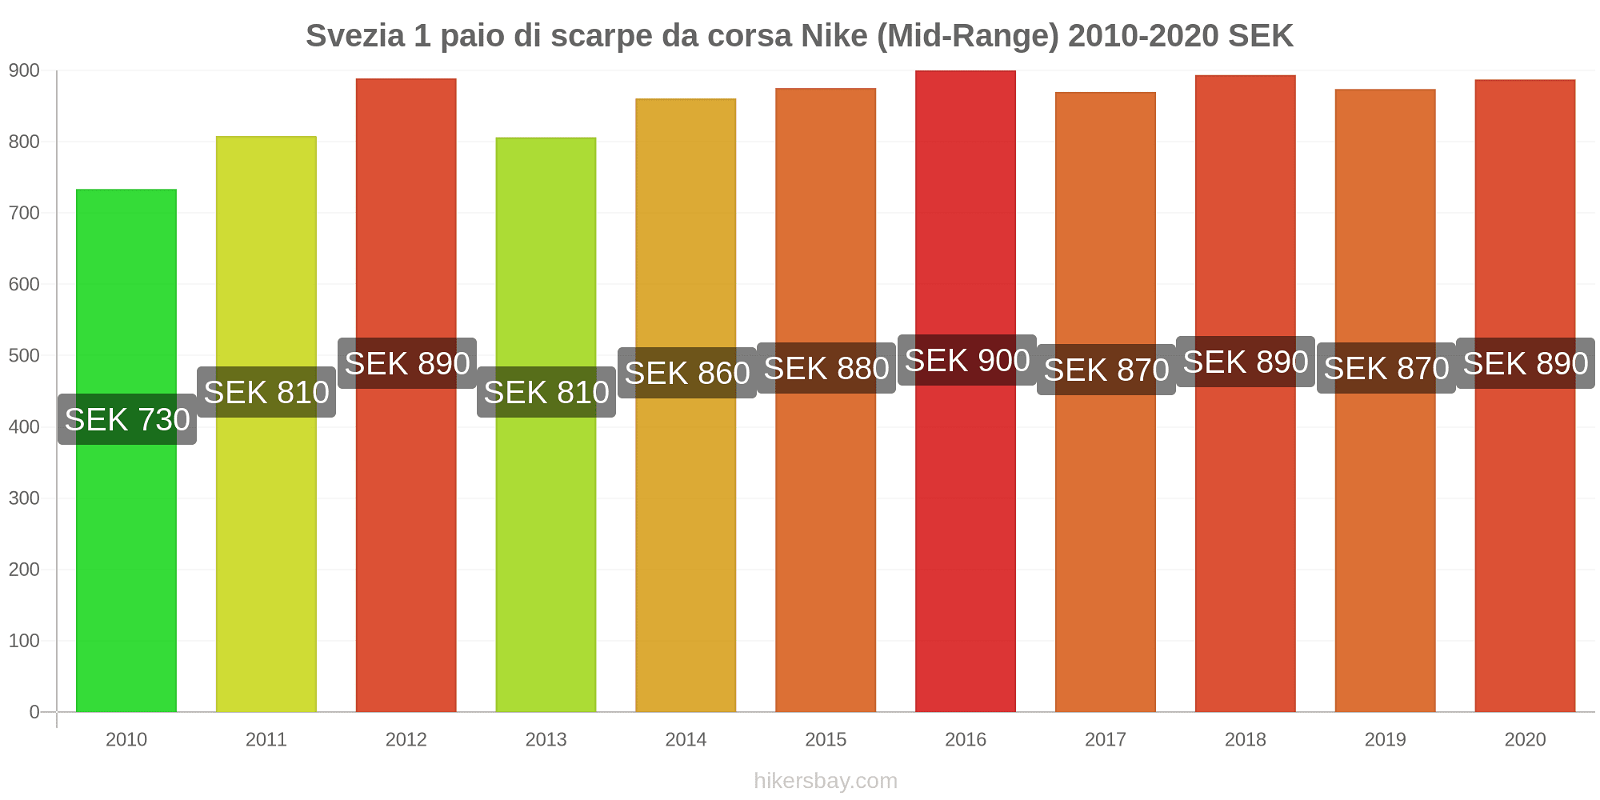 Svezia variazioni di prezzo 1 paio di scarpe da corsa Nike (simile) hikersbay.com